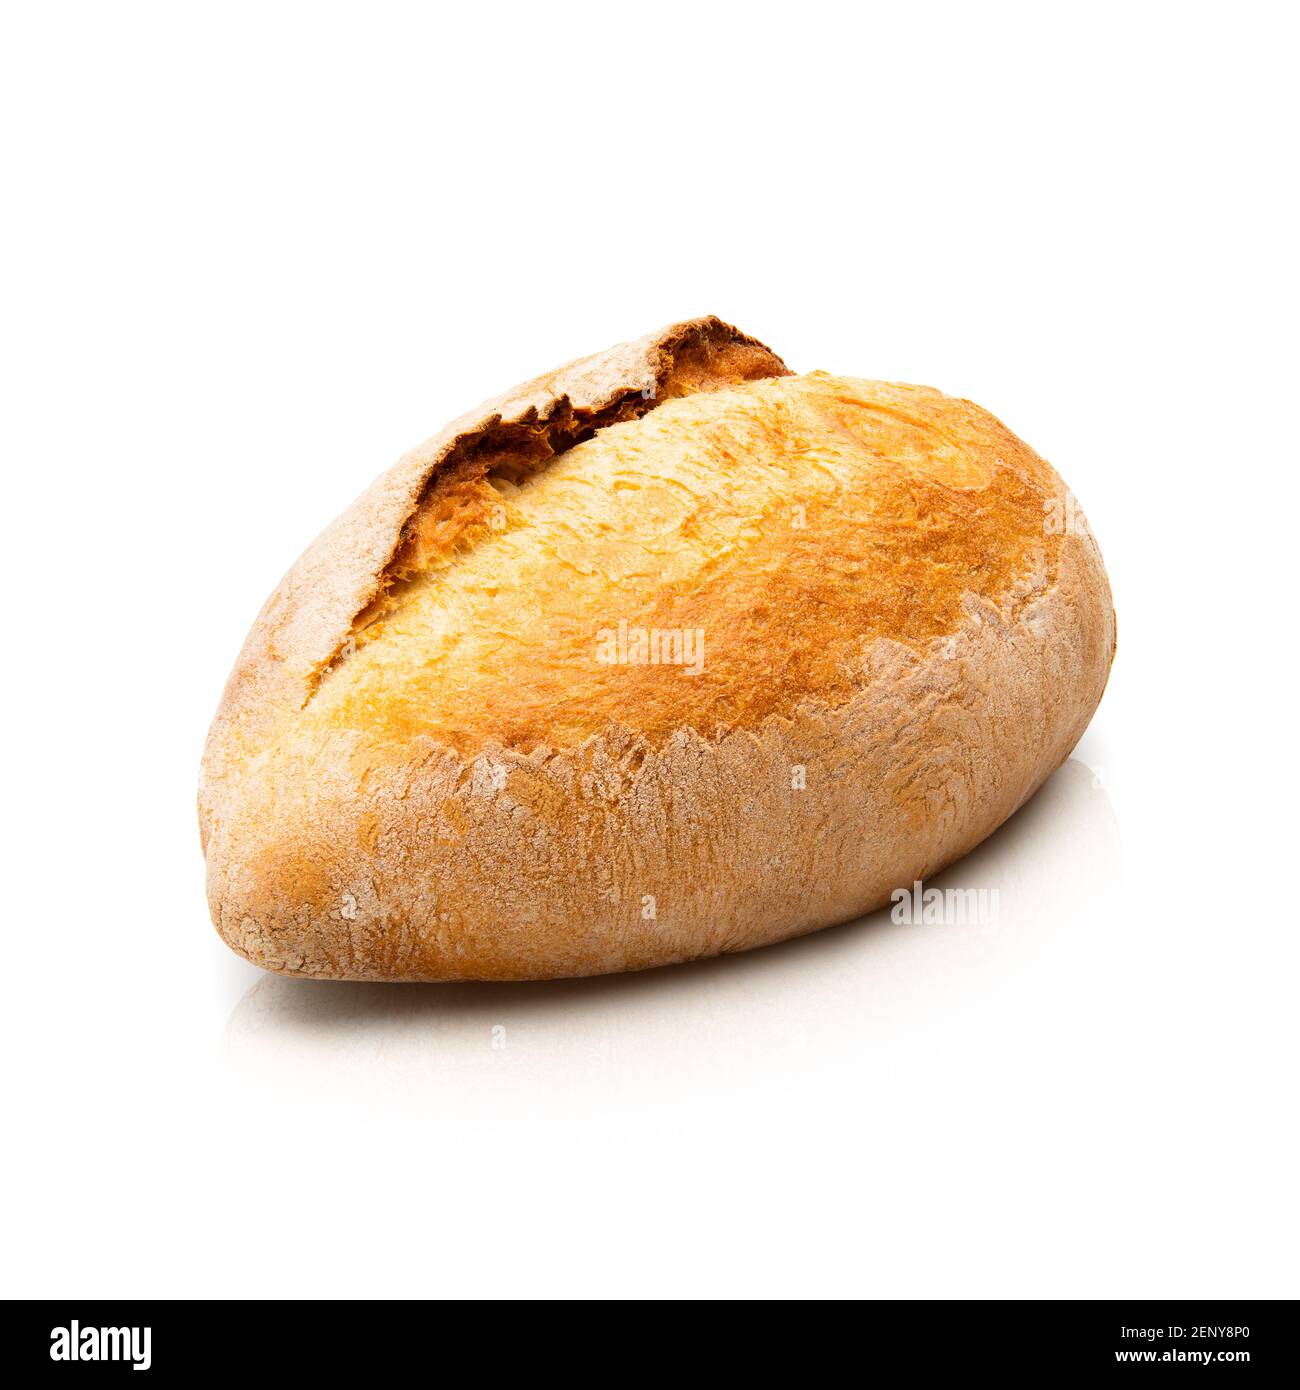 Pane tostato con crusche. Isolato su sfondo bianco. Vista dall'alto Foto Stock